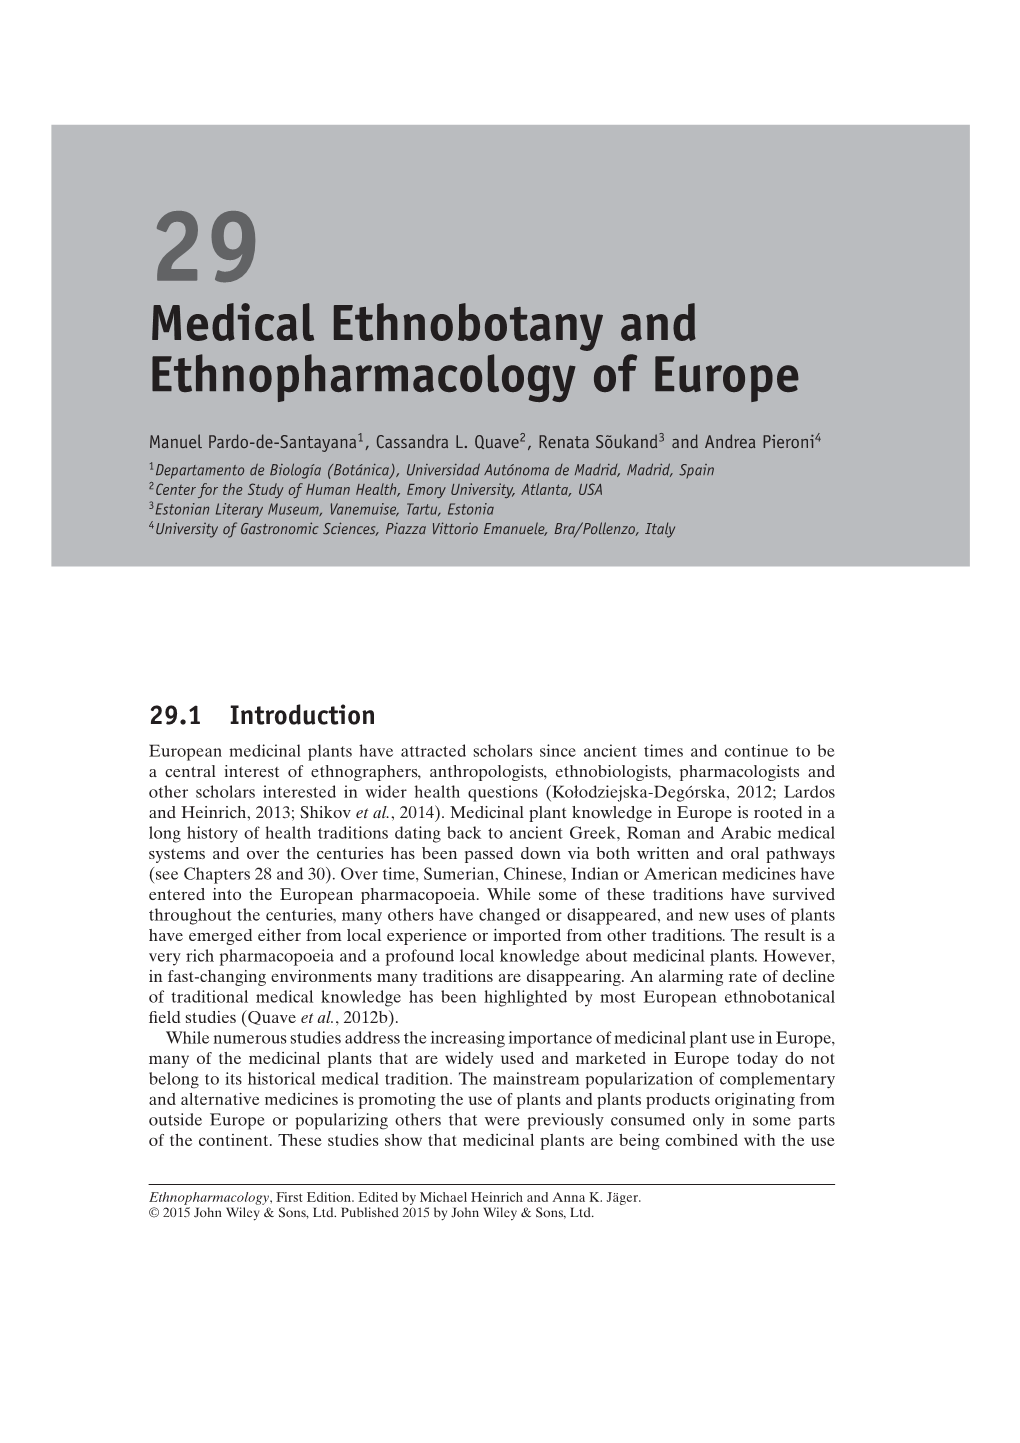 Medical Ethnobotany and Ethnopharmacology of Europe